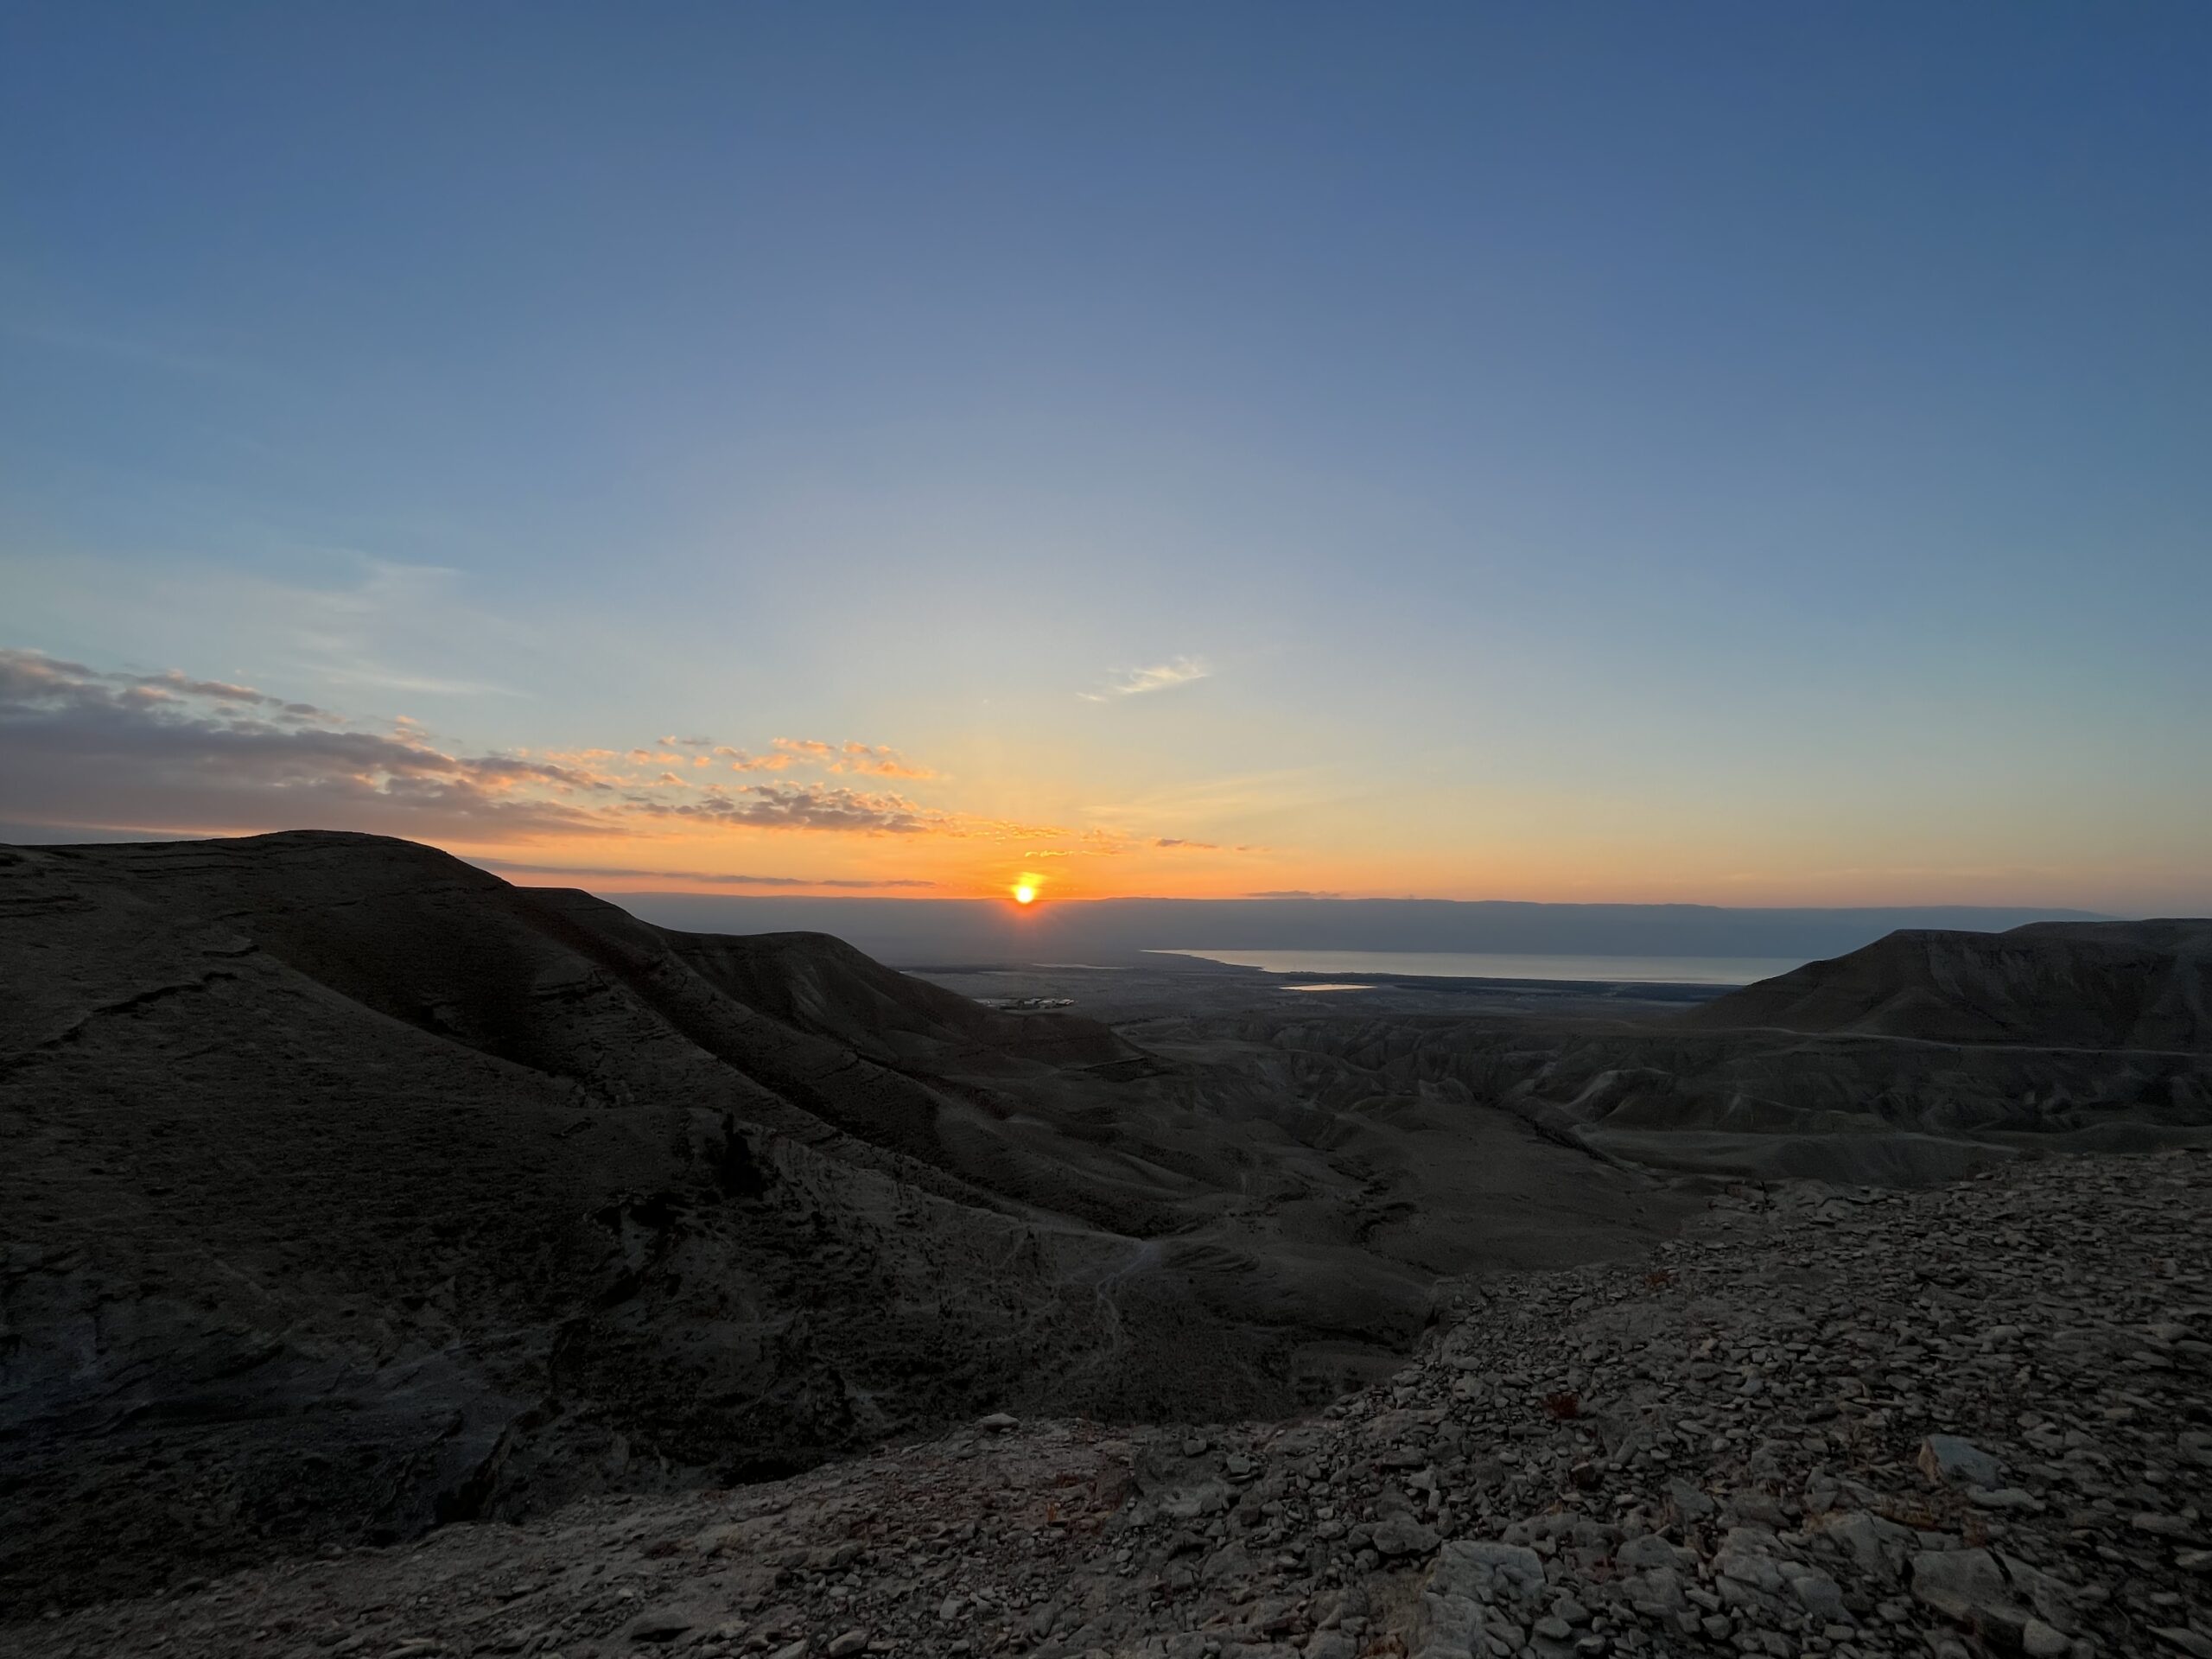 Sonnenaufgang in der Wüste Judää.